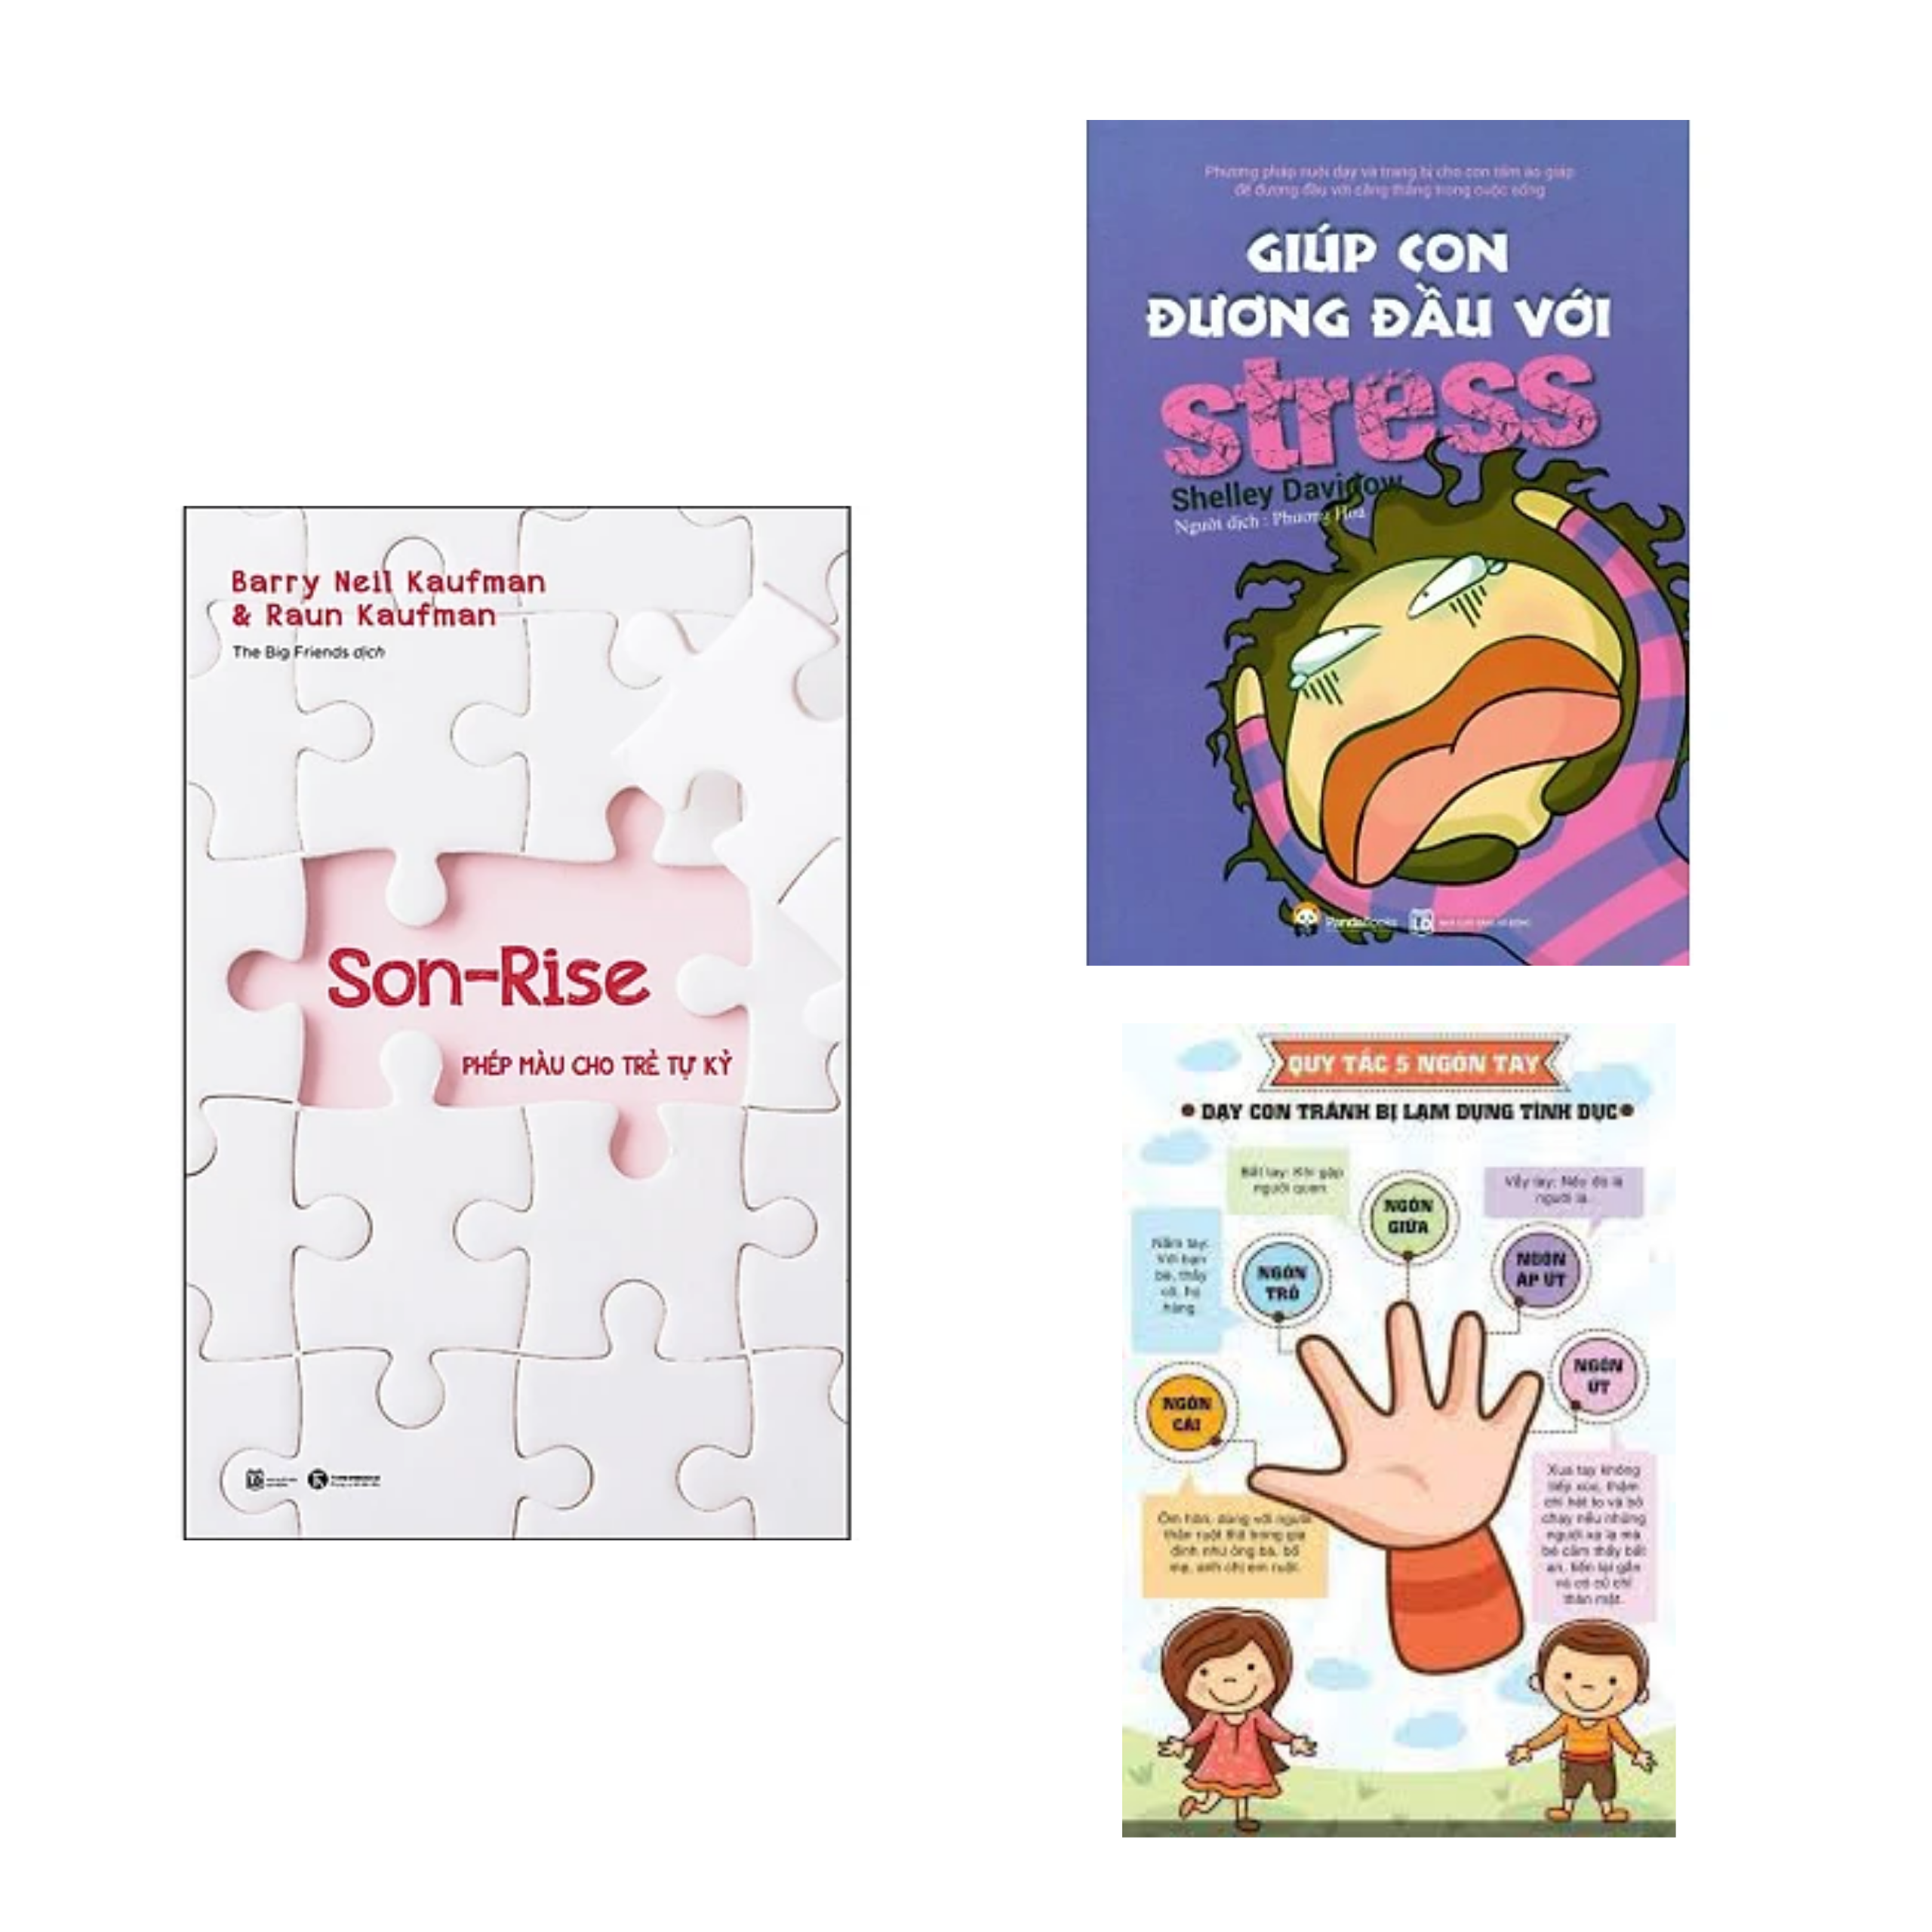 Cocmbo 2 cuốn: Son-Rise Phép Màu Cho Trẻ Tự Kỷ + Giúp Con Đương Đầu Với Stress / Phương pháp giúp cha mẹ hiểu con hơn/ Tặng Bookmark Happy Life